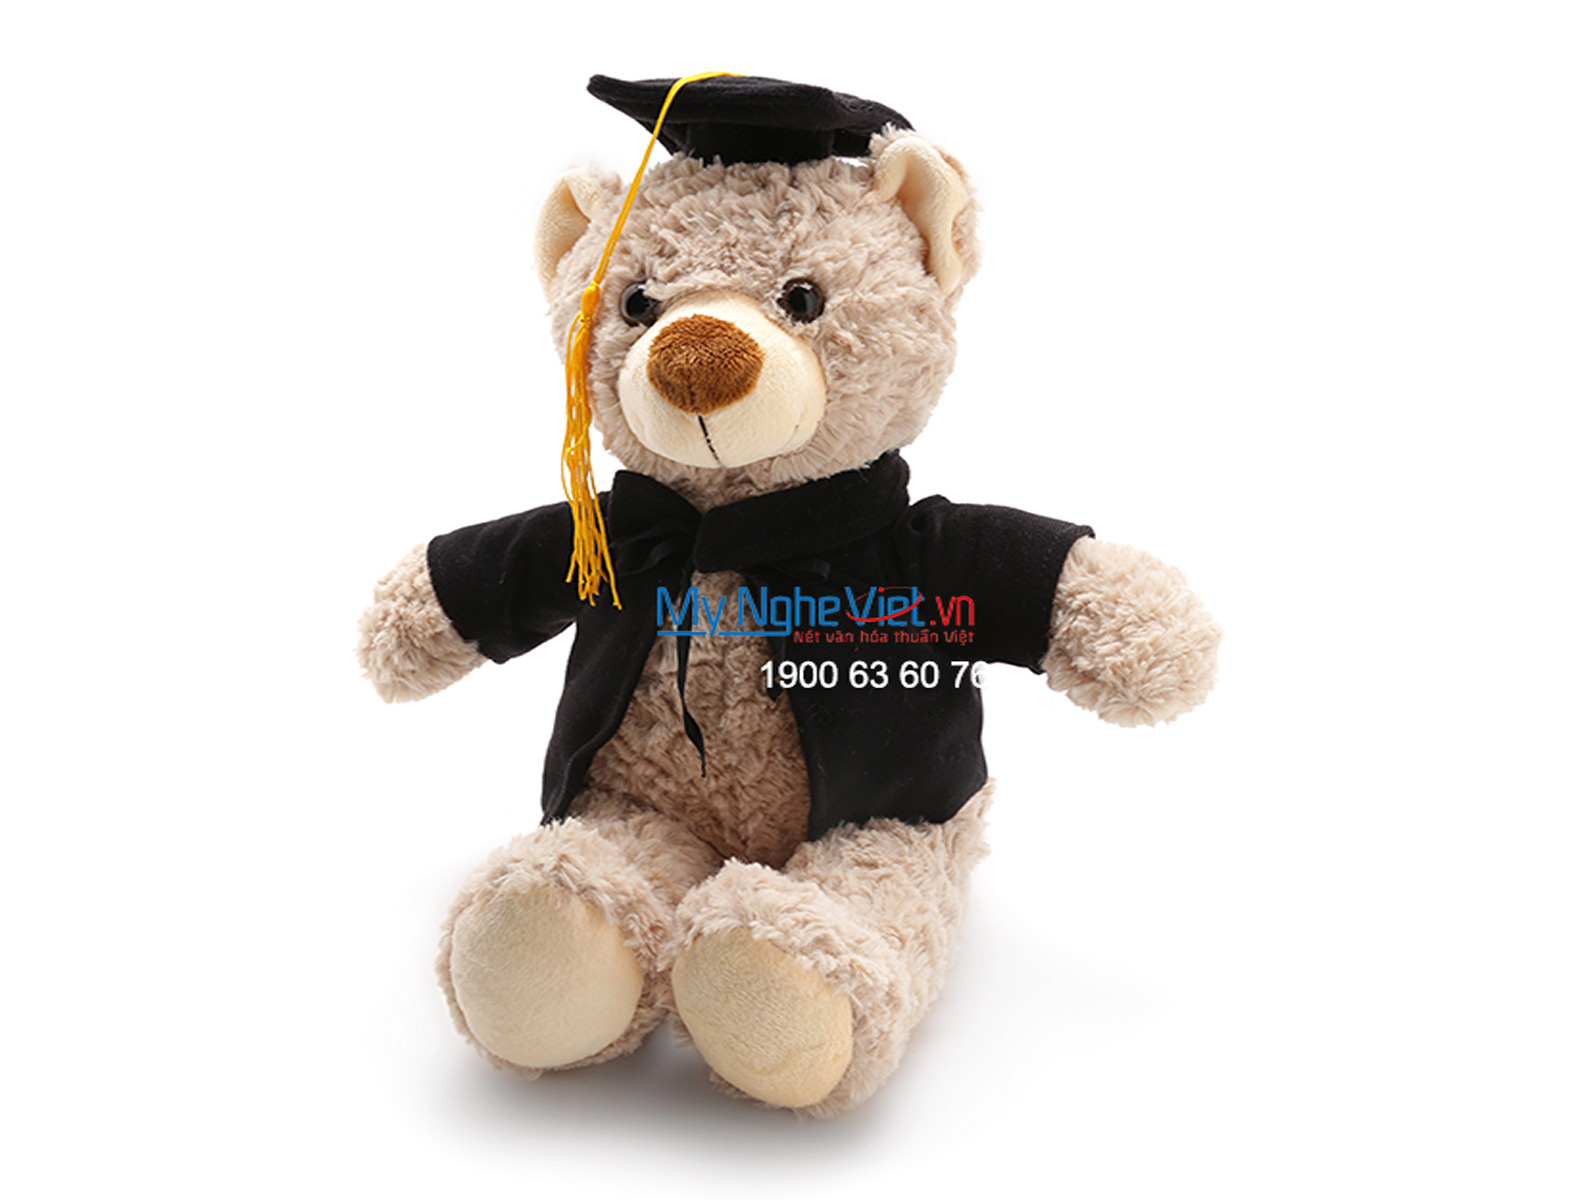 Gấu tốt nghiệp xám QTN-GBN01